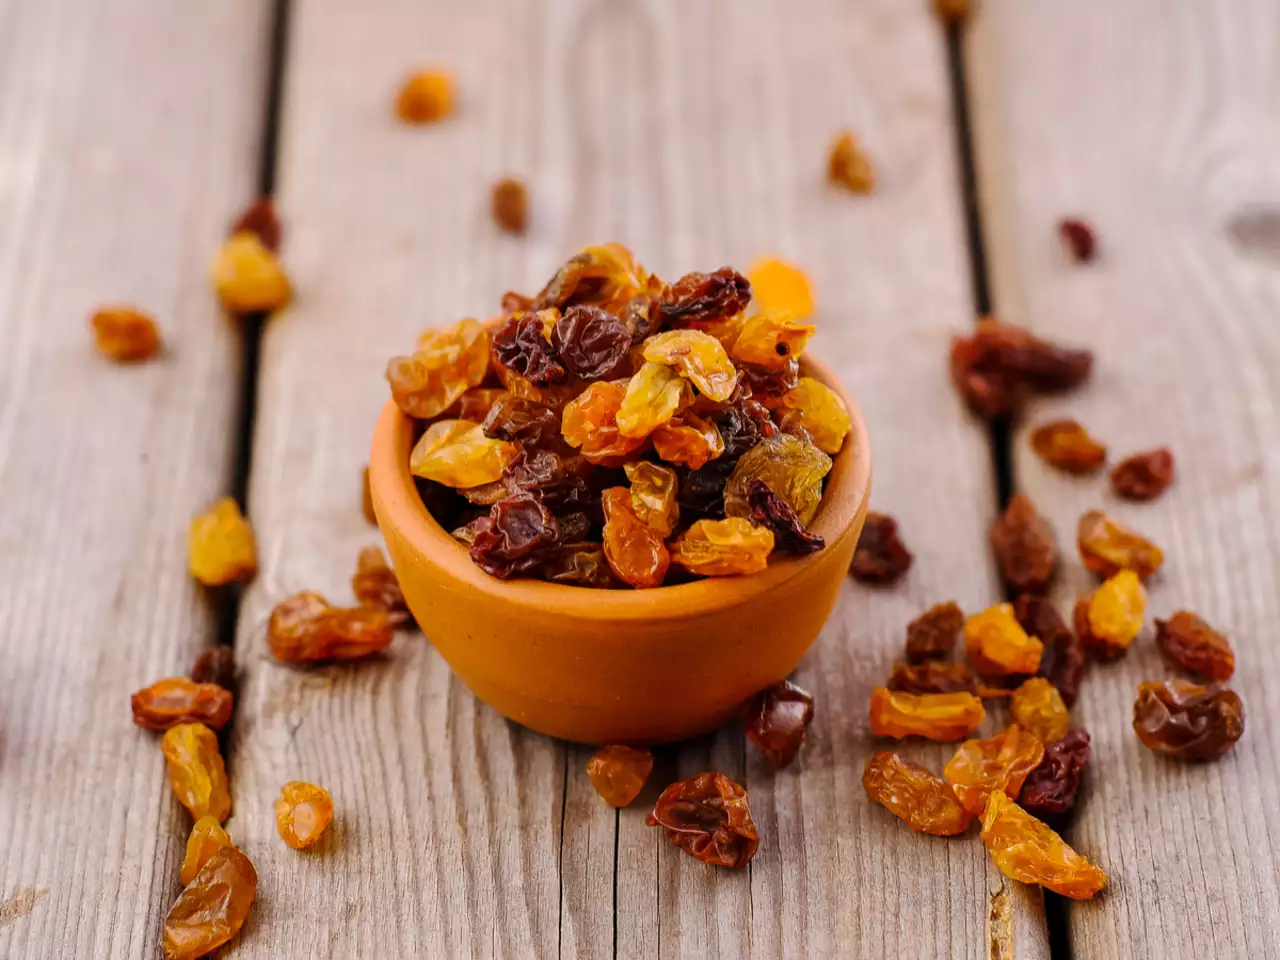 Raisins for health